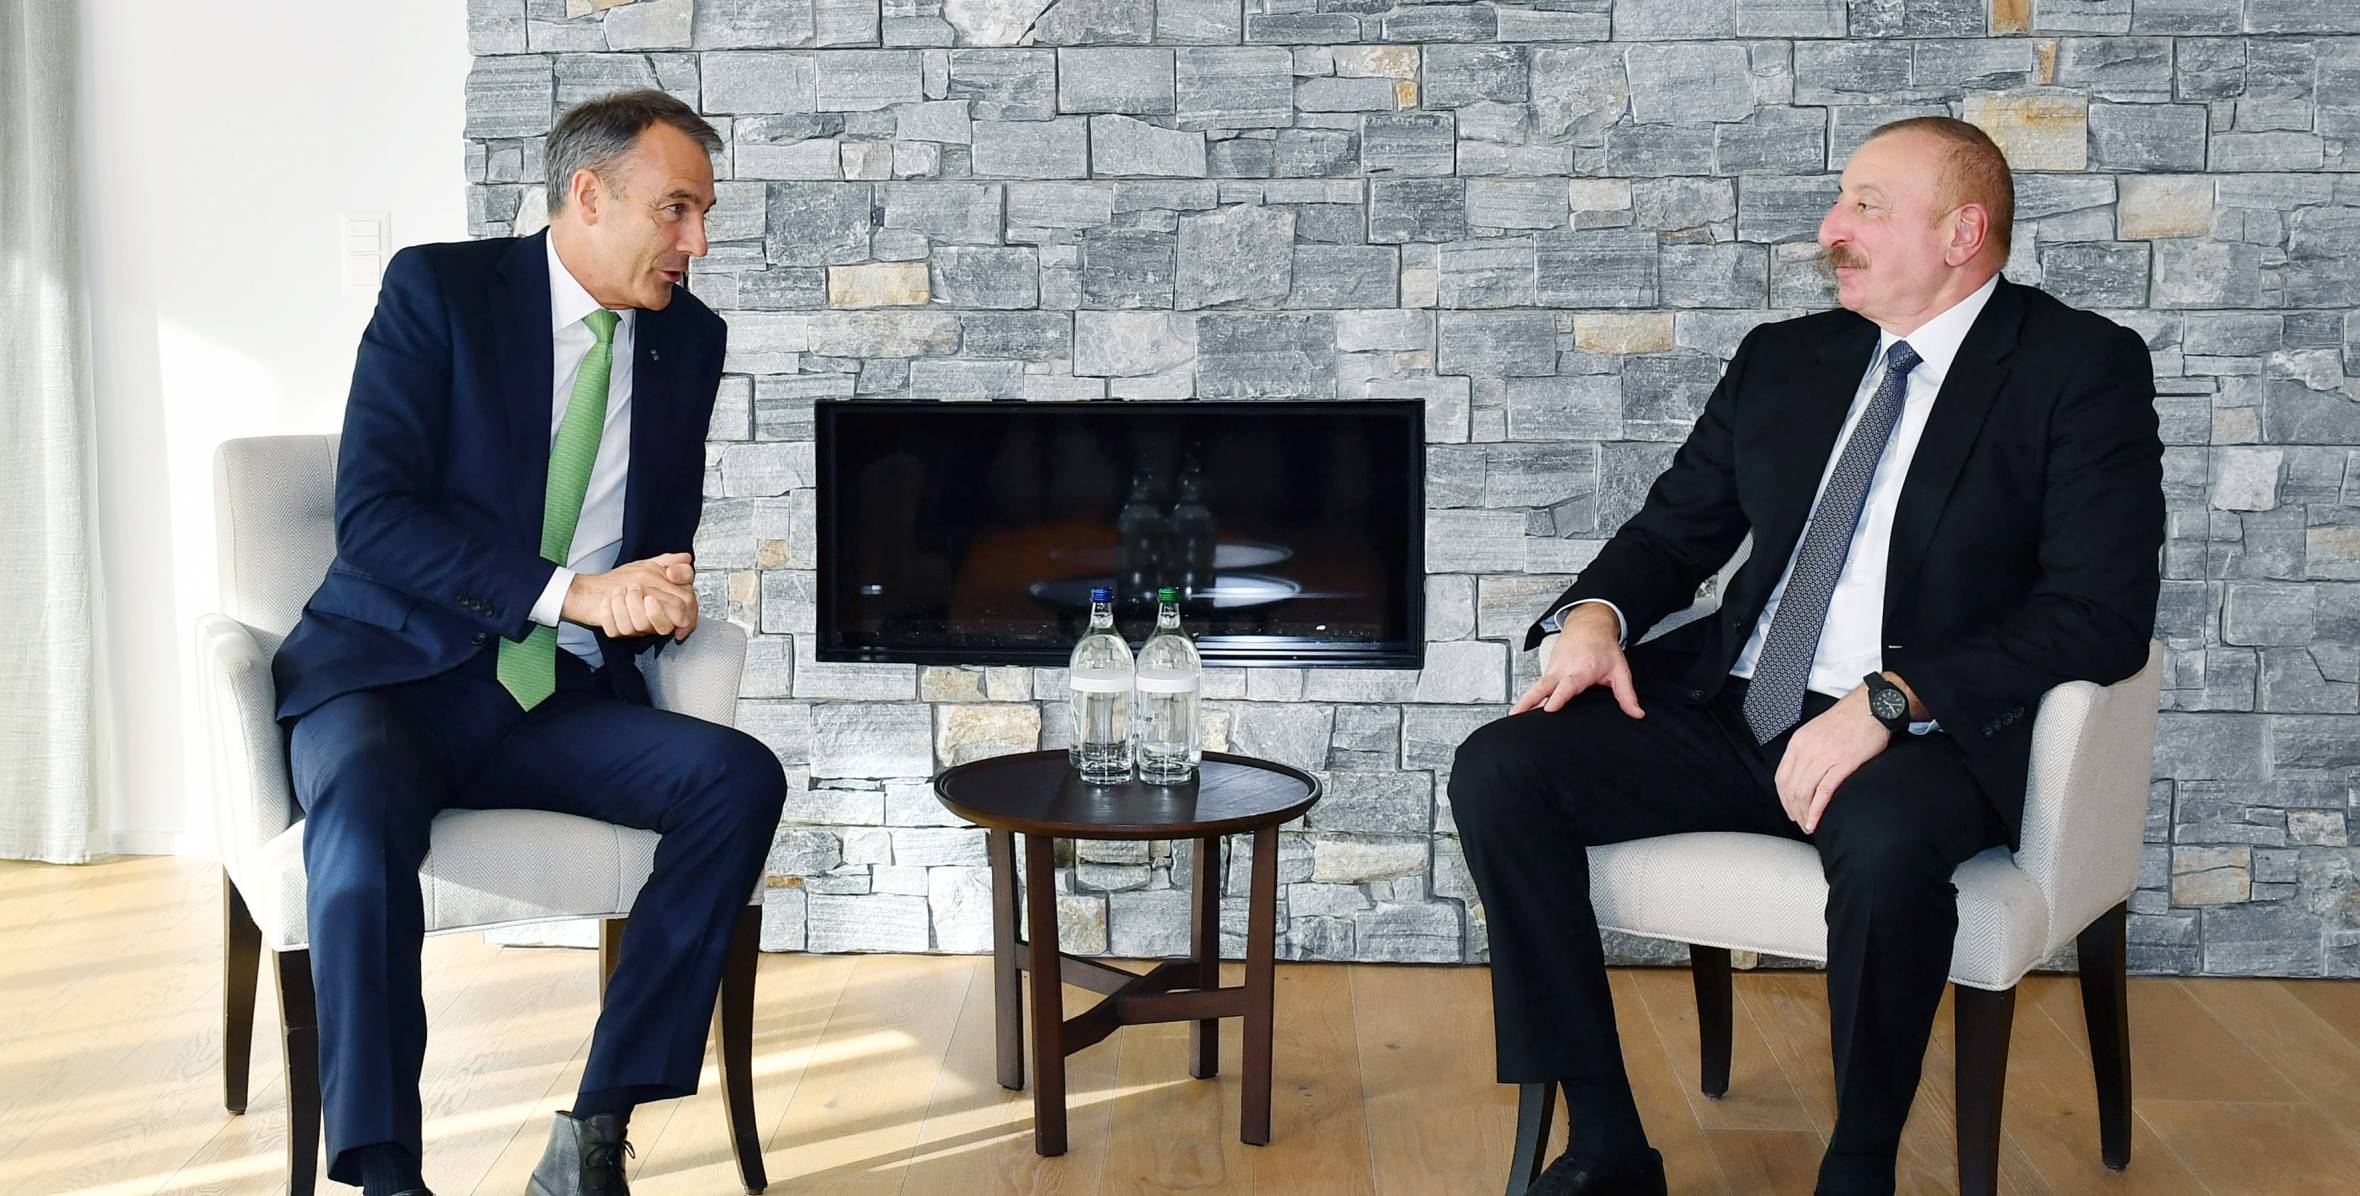 Ilham Aliyev met with the CEO of bp, Bernard Looney